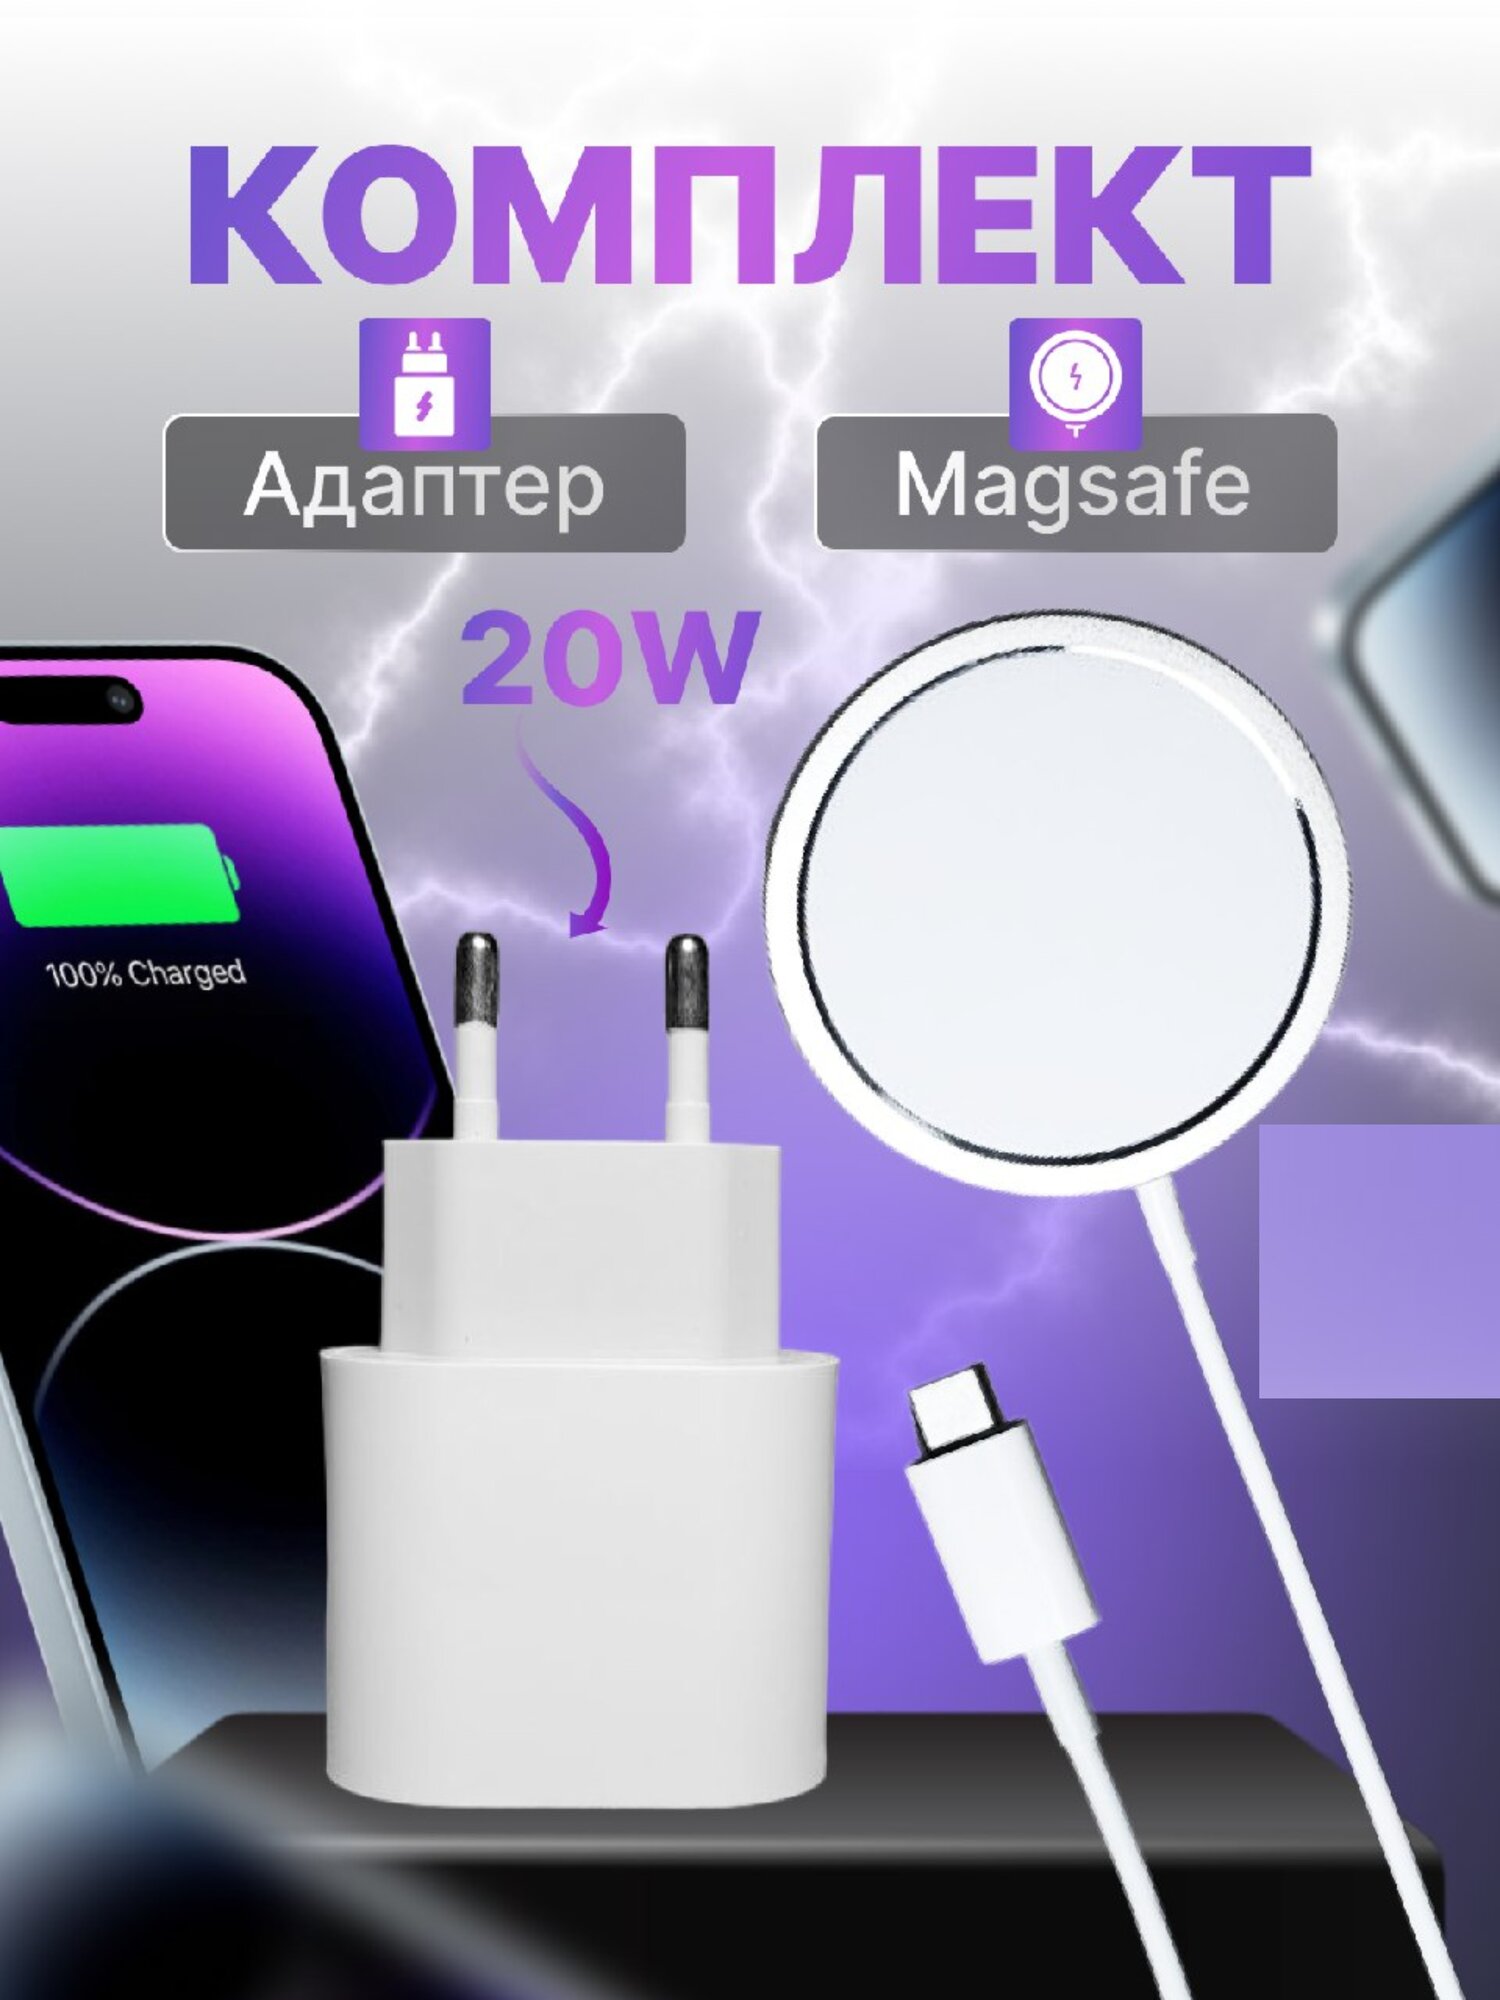 Magsafe беспроводная зарядка для iphone и адаптер 20W